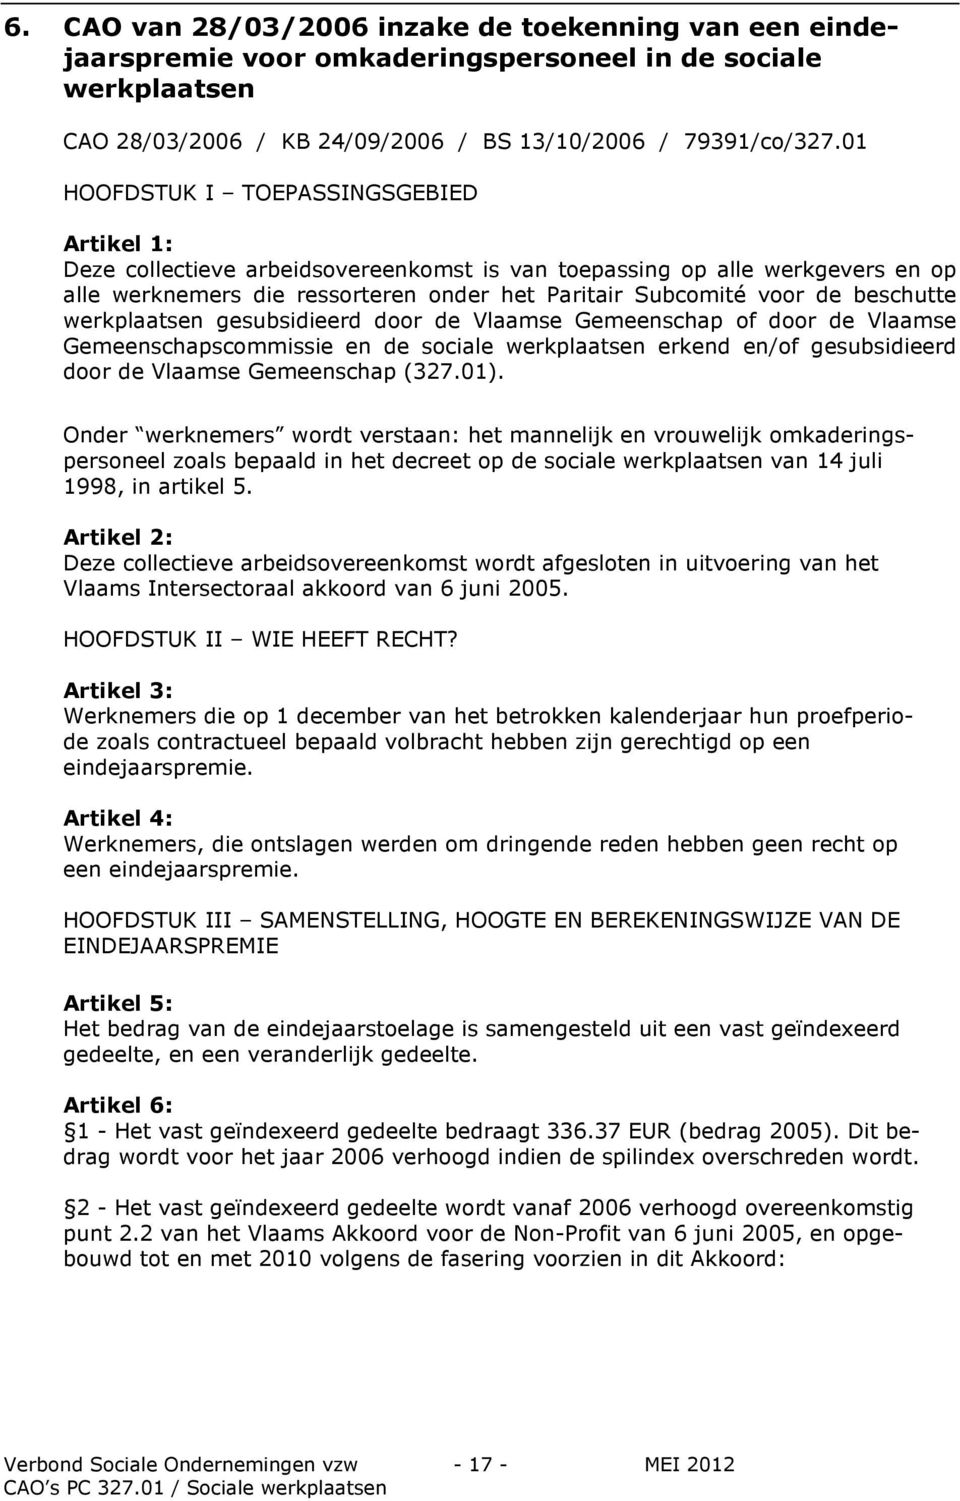 beschutte werkplaatsen gesubsidieerd door de Vlaamse Gemeenschap of door de Vlaamse Gemeenschapscommissie en de sociale werkplaatsen erkend en/of gesubsidieerd door de Vlaamse Gemeenschap (327.01).